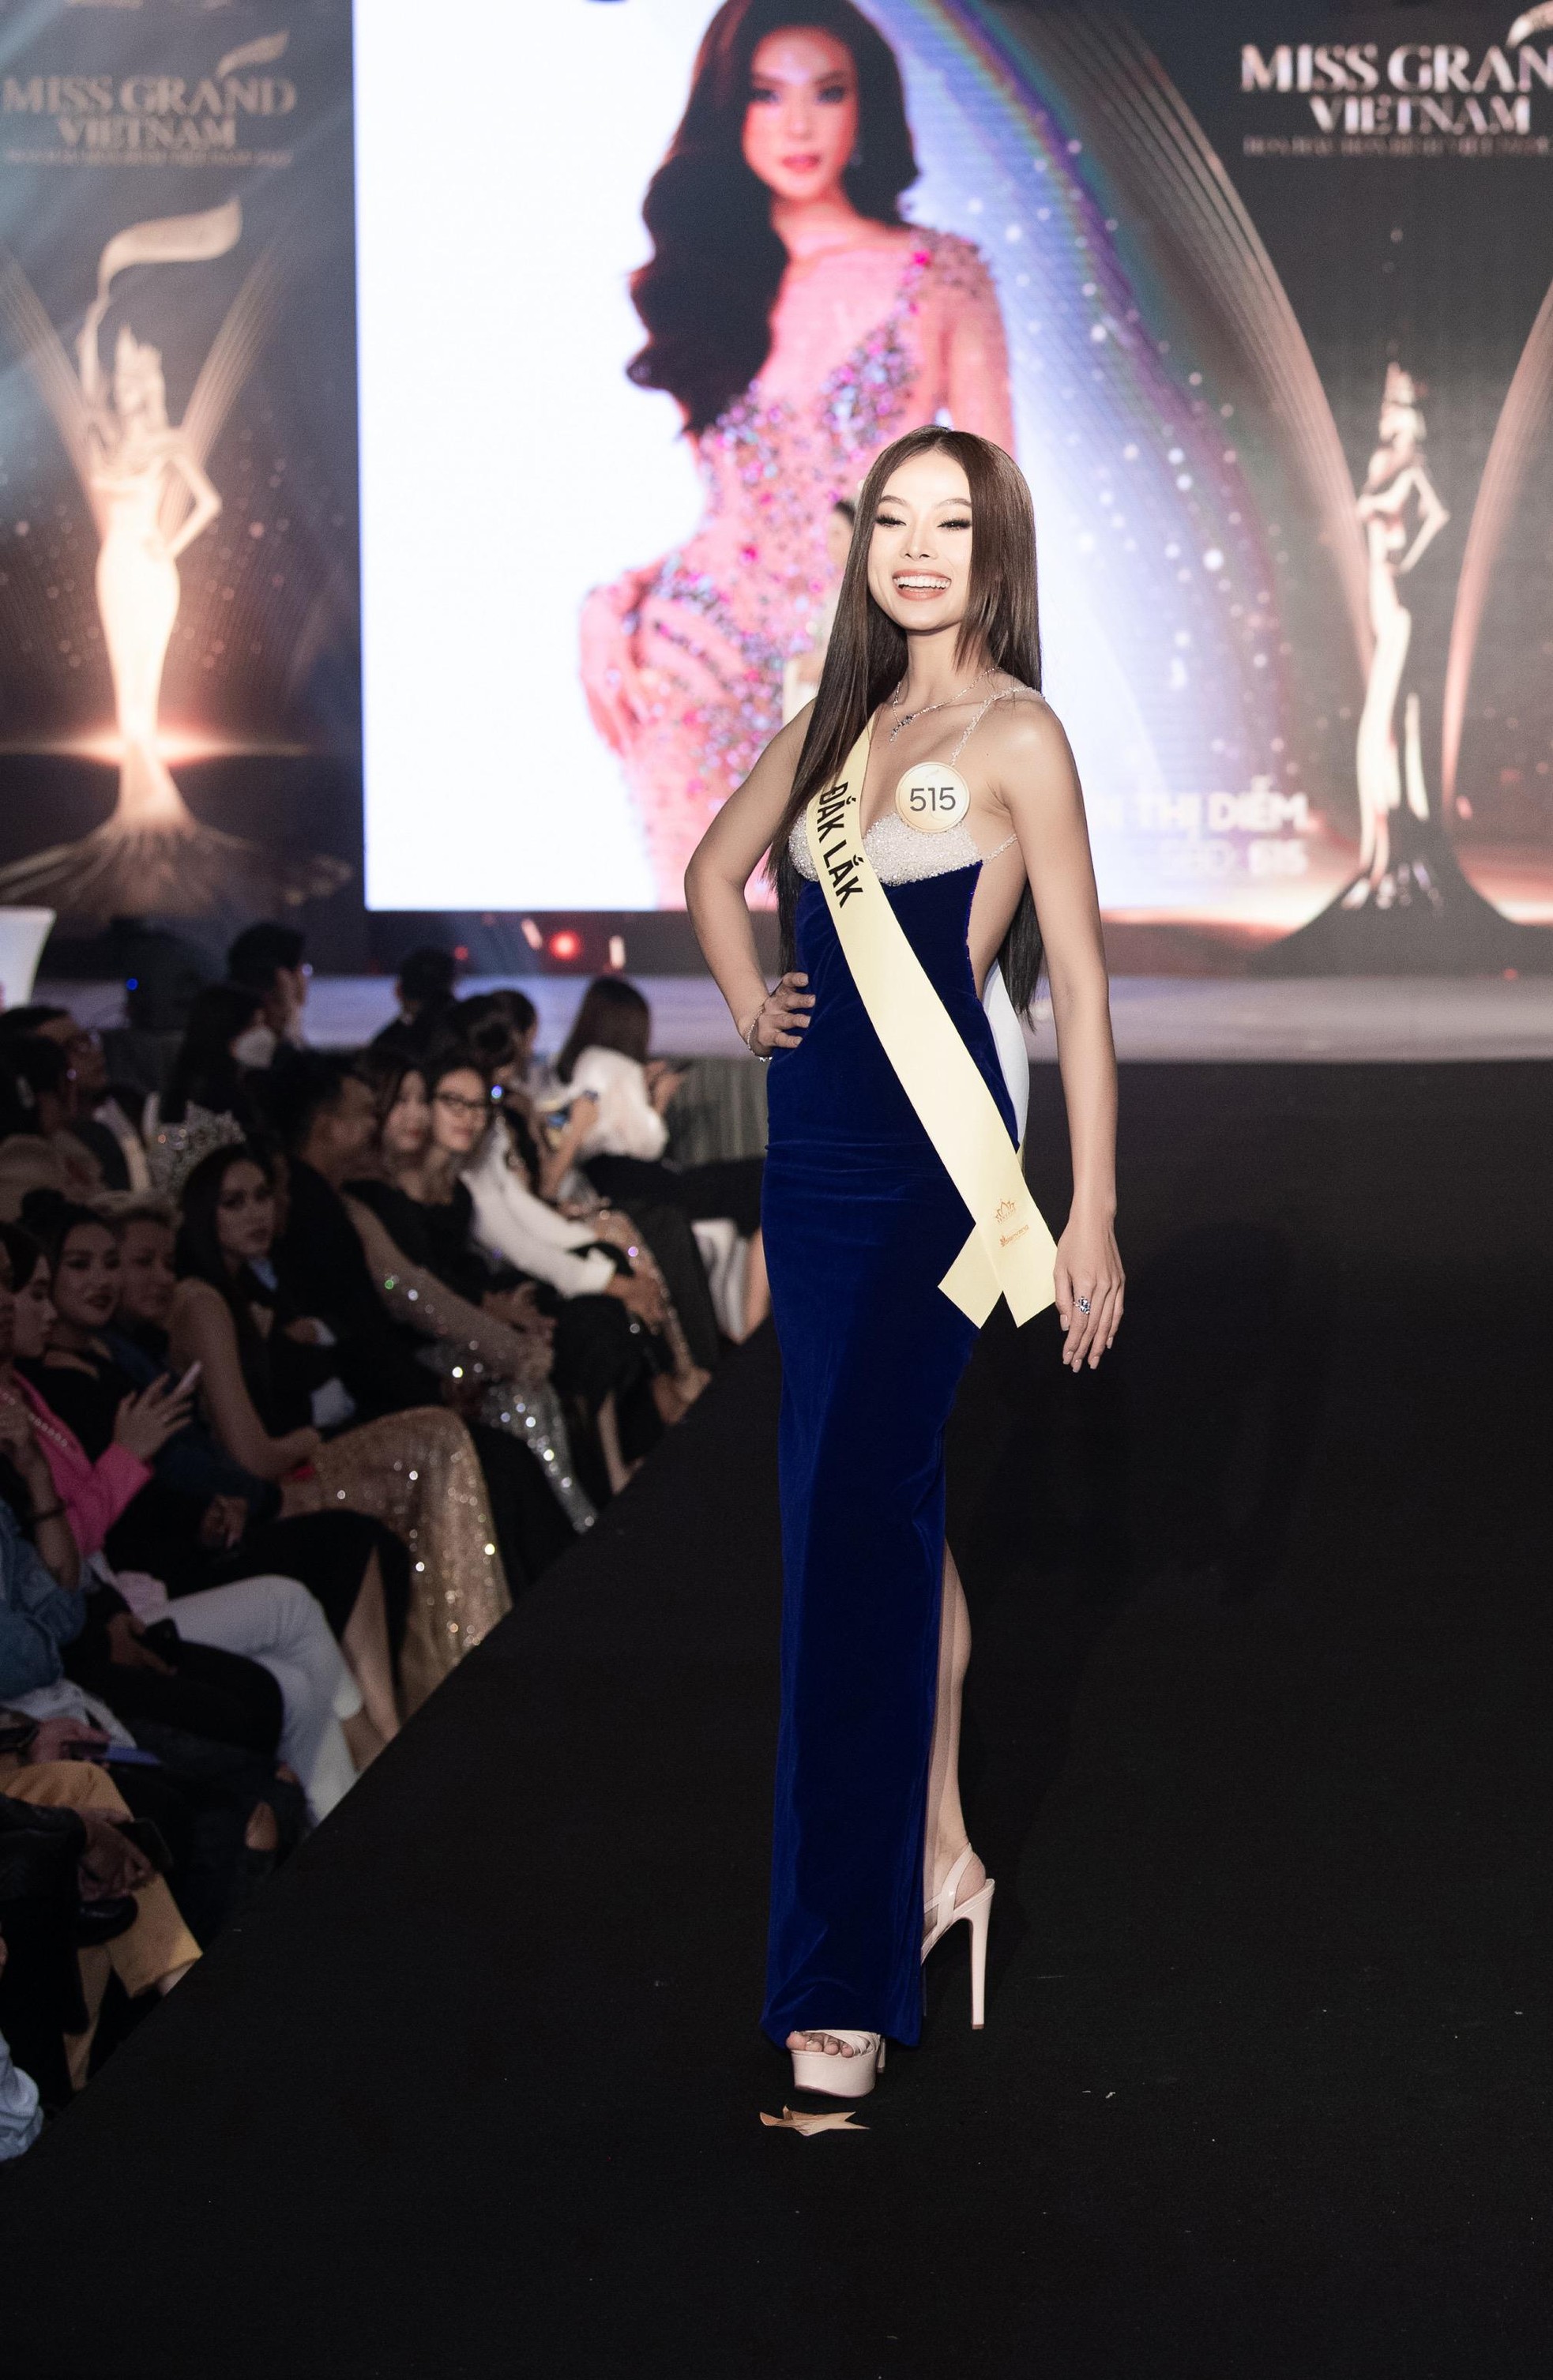 Mai Ngô, Quỳnh Châu tung chiêu catwalk độc đáo tại lễ nhận sash của Miss Grand Vietnam 2022-9